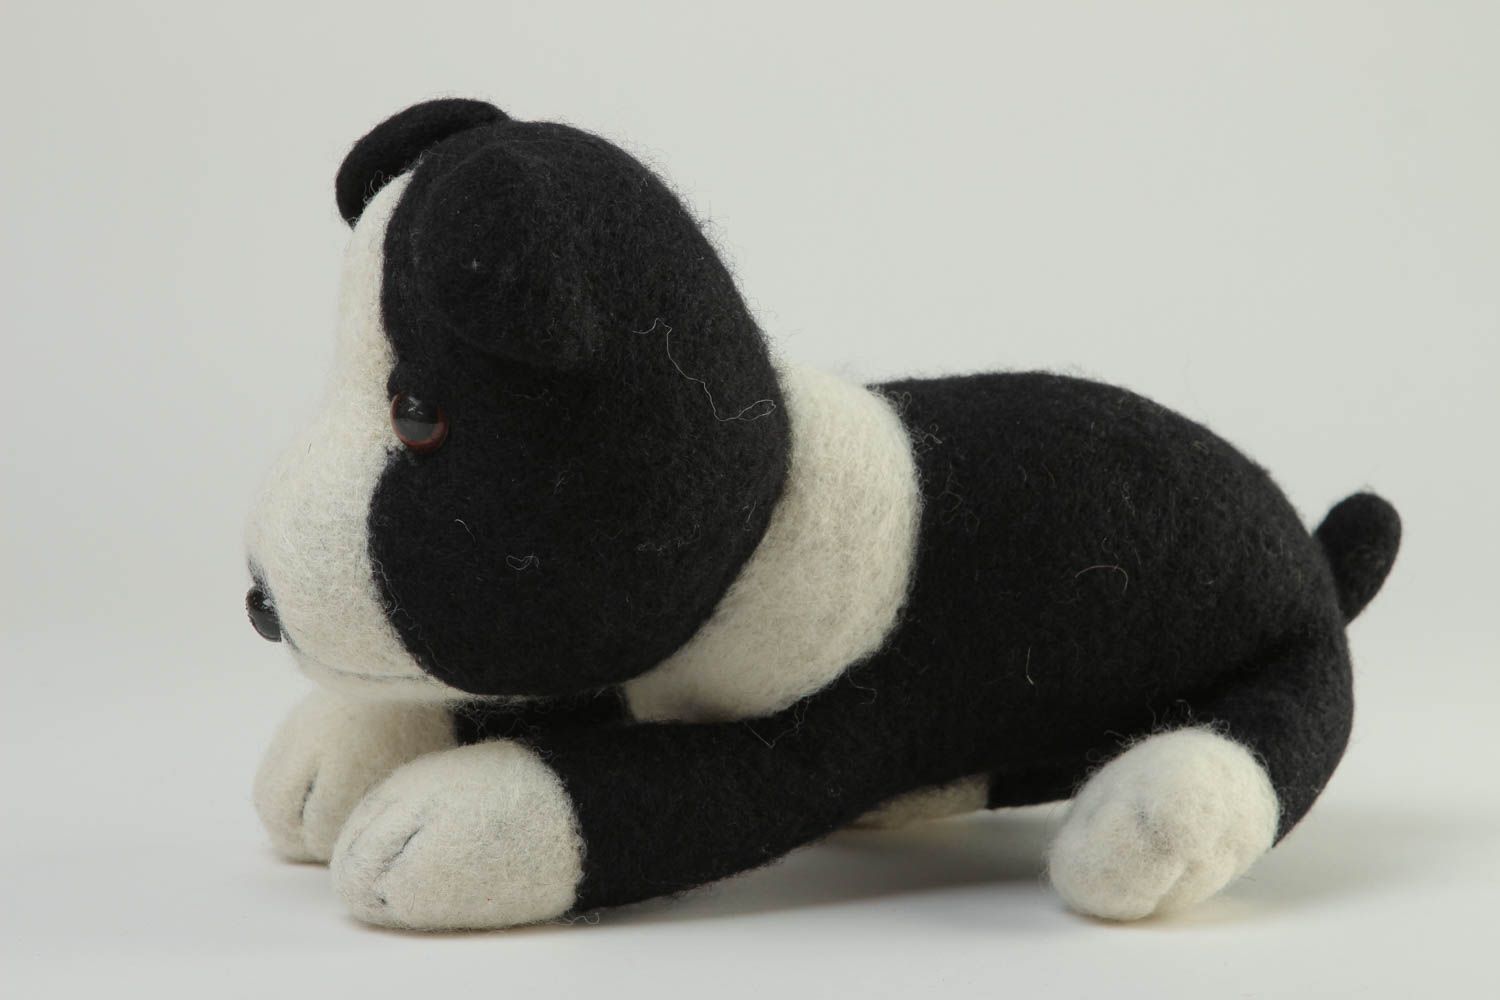 Handmade Spielsachen für Kinder Öko Kinderspielzeug Plüsch Hund schwarz weiß foto 2